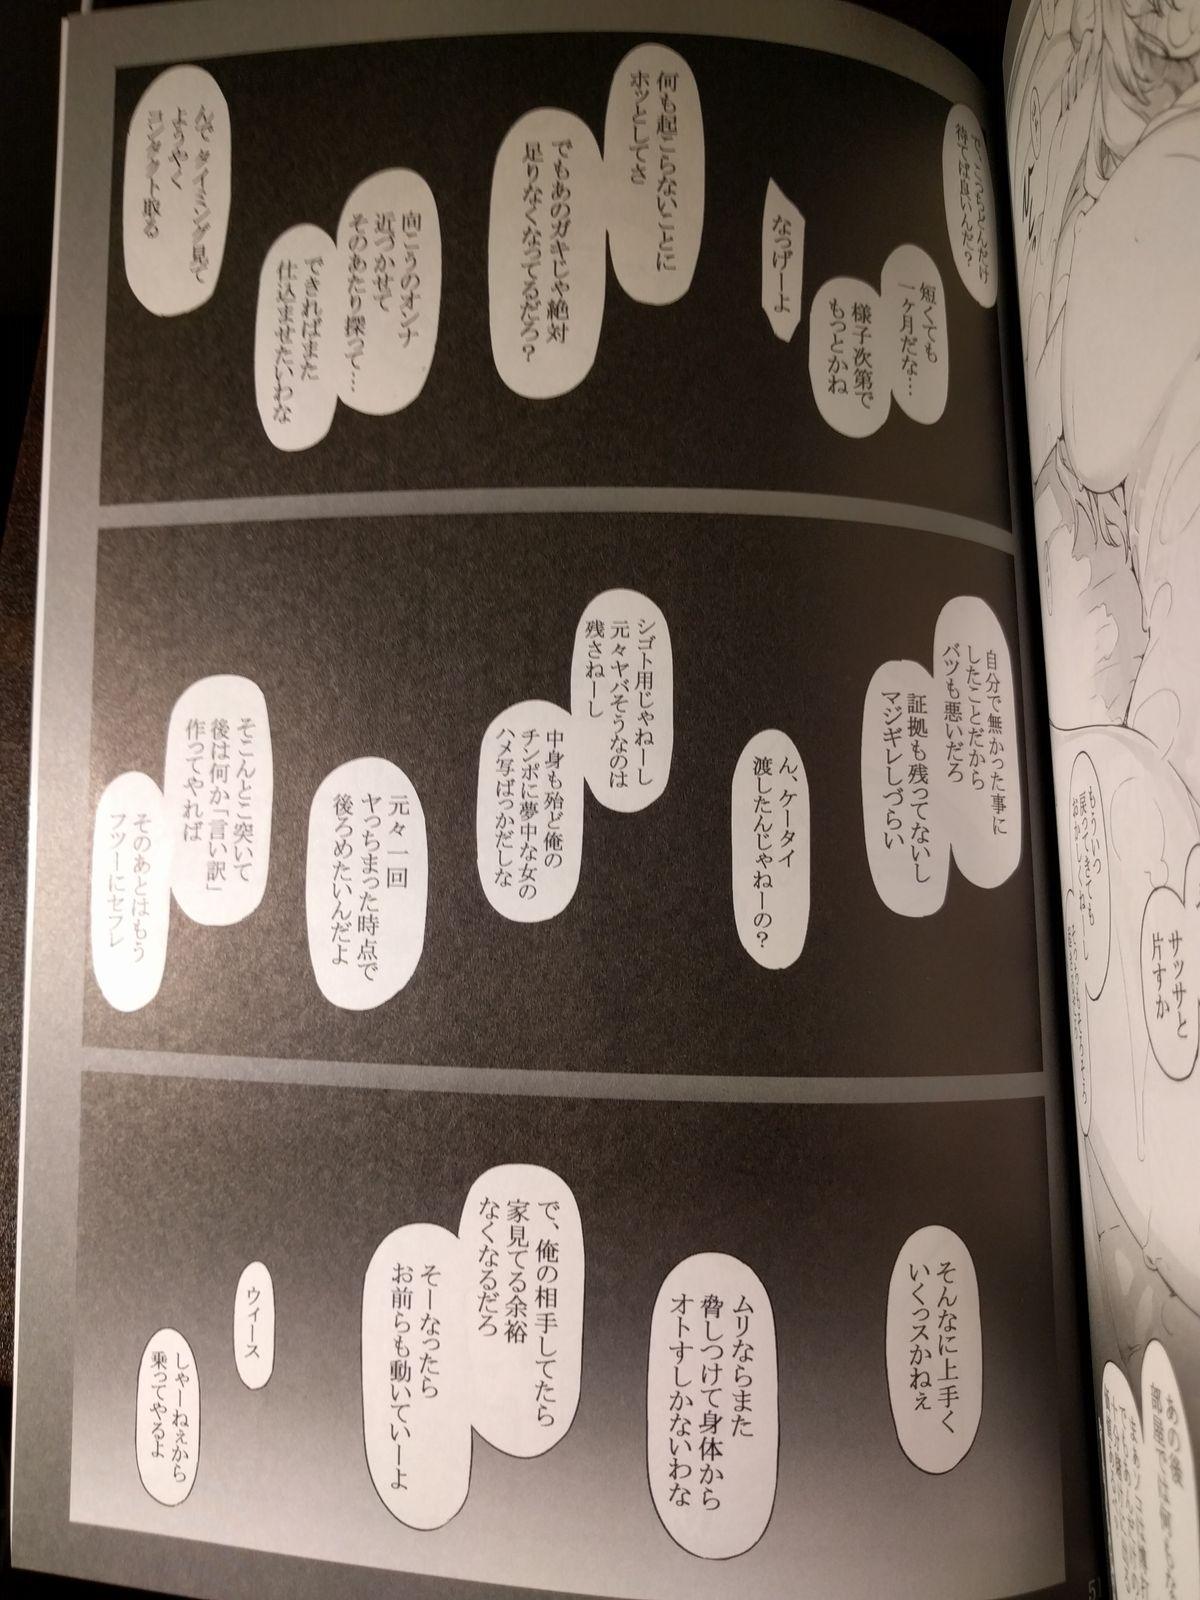 橘さん家ノ男性事情 小説版挿絵+オマケの本 page 27 onward 23